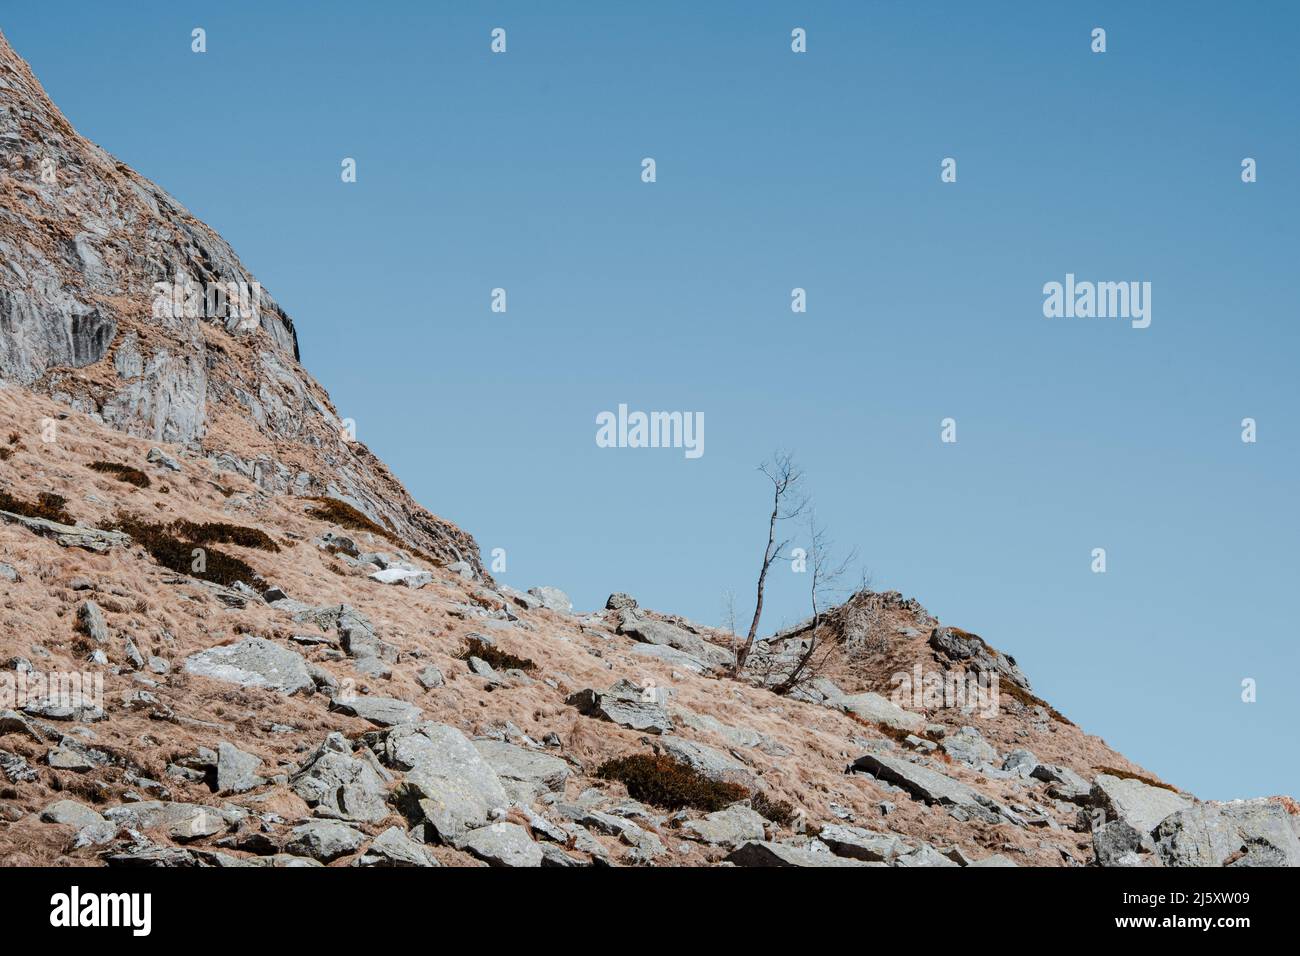 Albero solitario sulle rocce vicino al rifugio Margaroli, Formazza, Italia Foto Stock